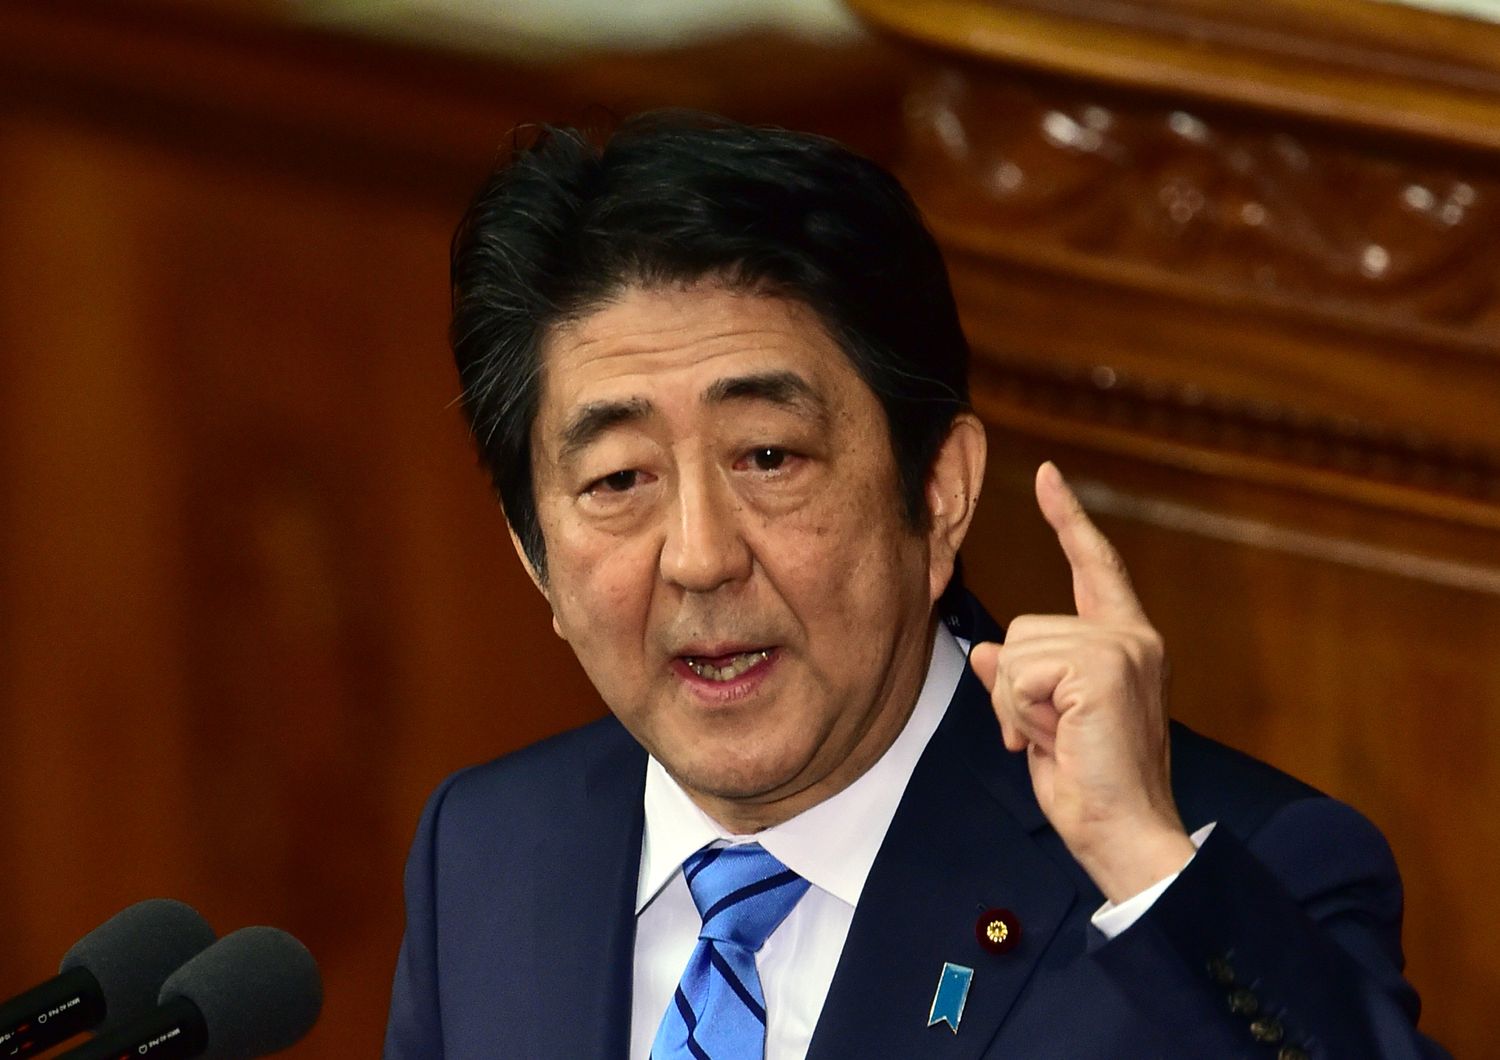 Shinzo Abe, Primo ministro Giapponese (afp)&nbsp;